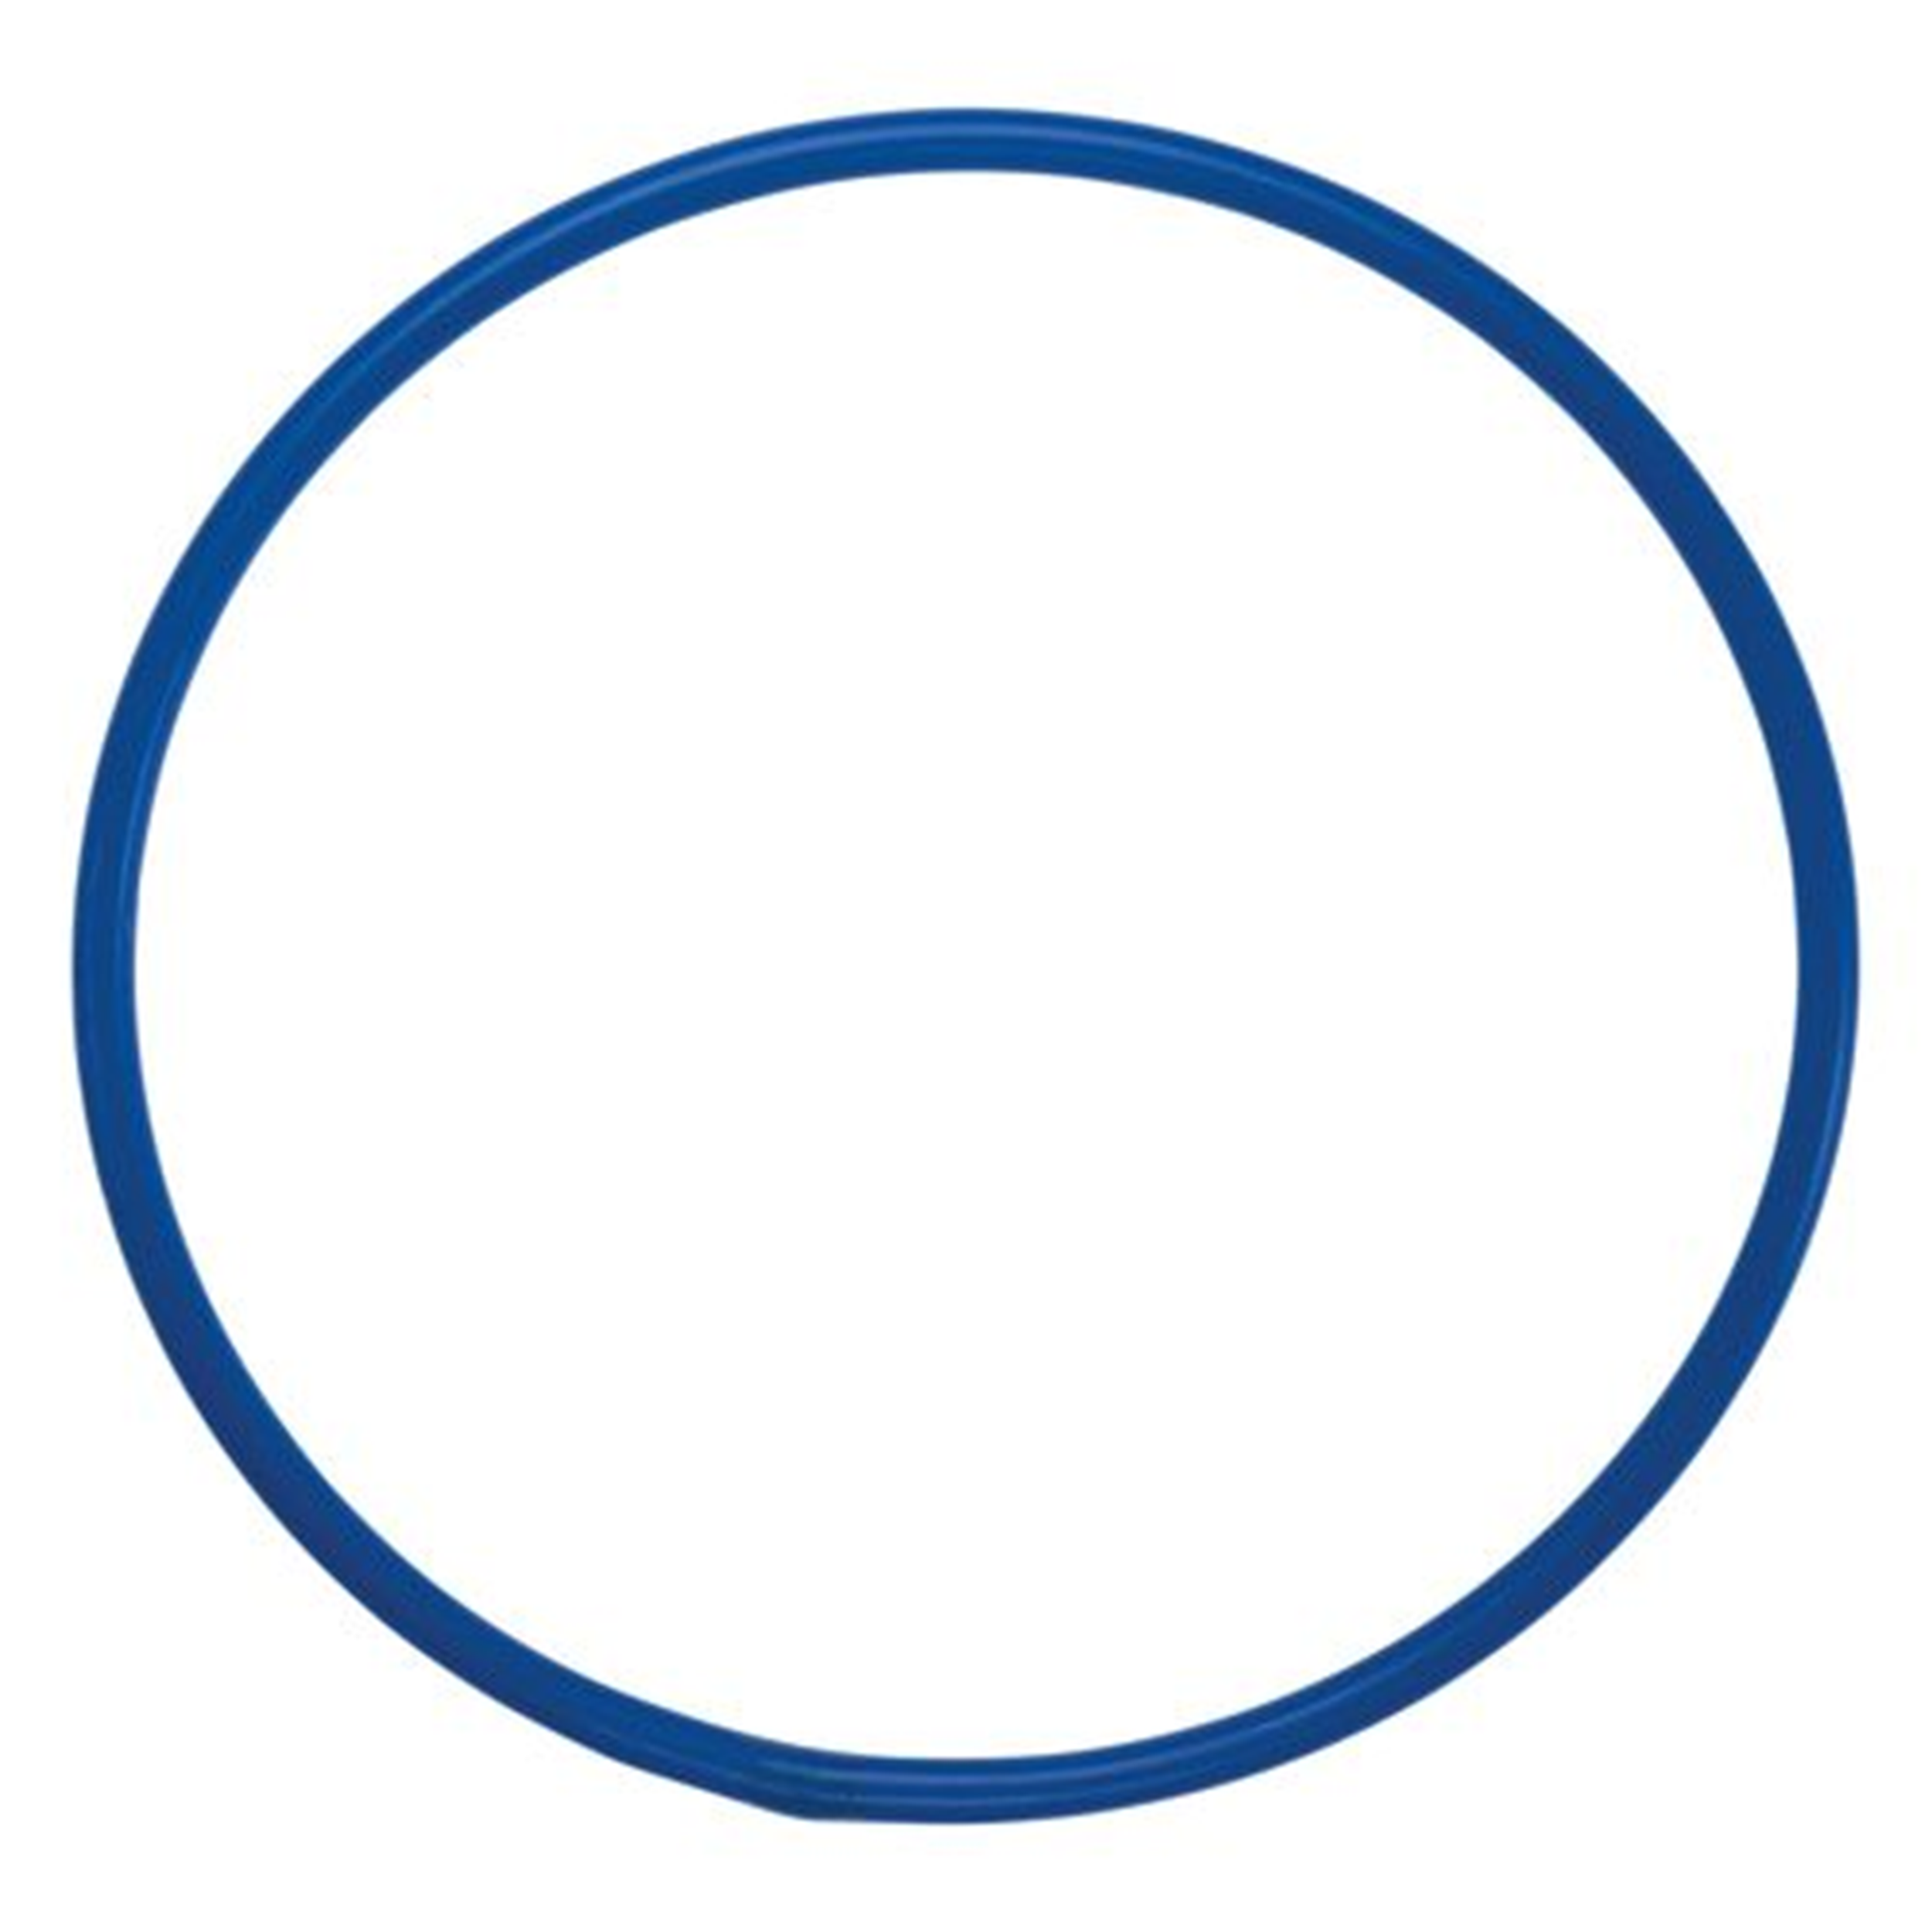 Cerceau rond bleu 65 cm (l'unité)